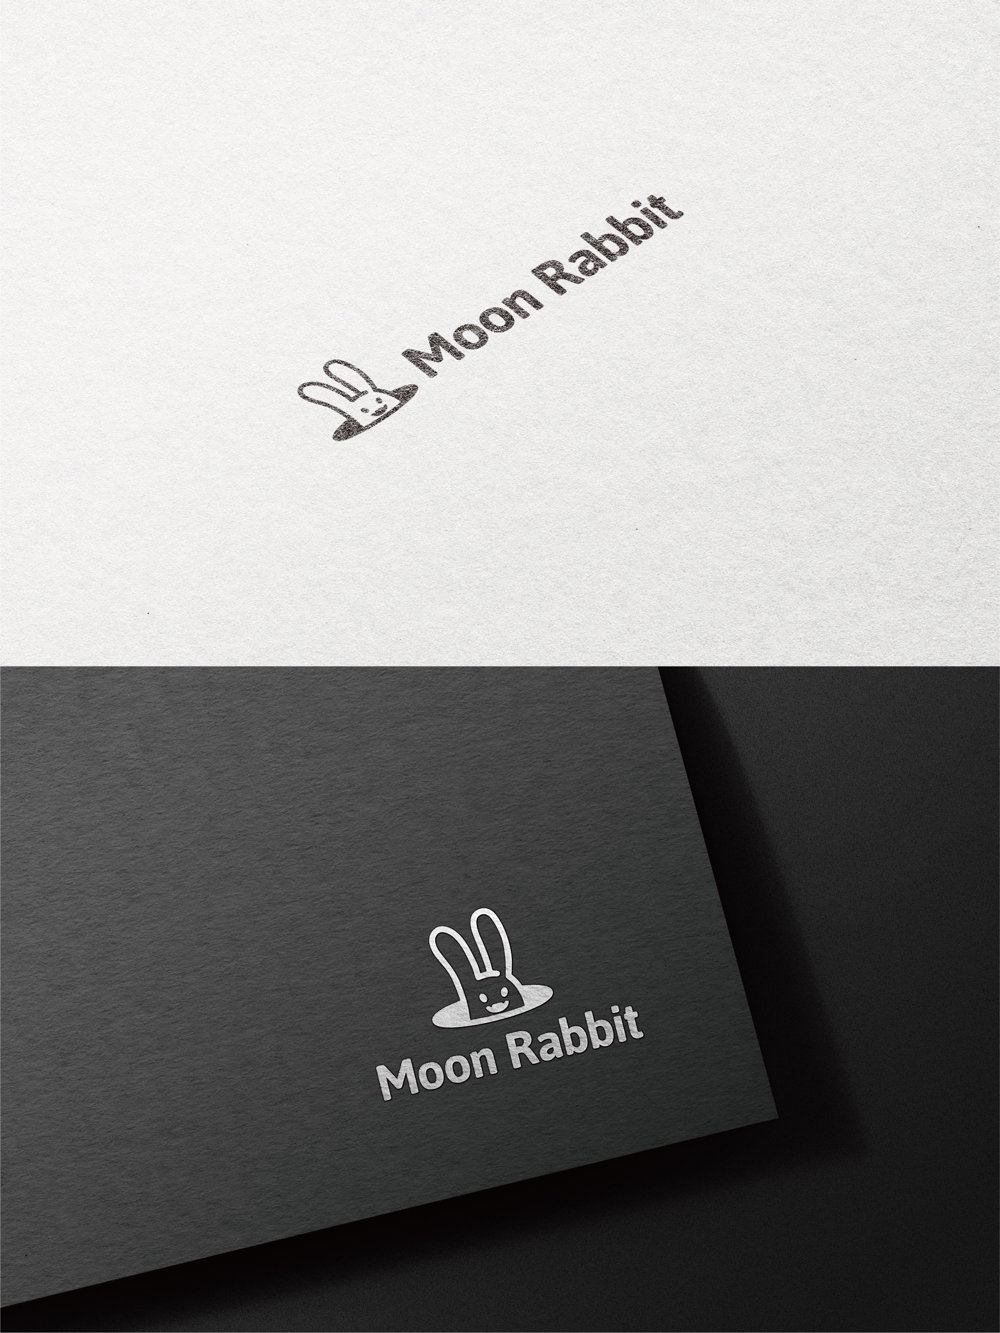 アパレルショップサイト moon rabbit のロゴ